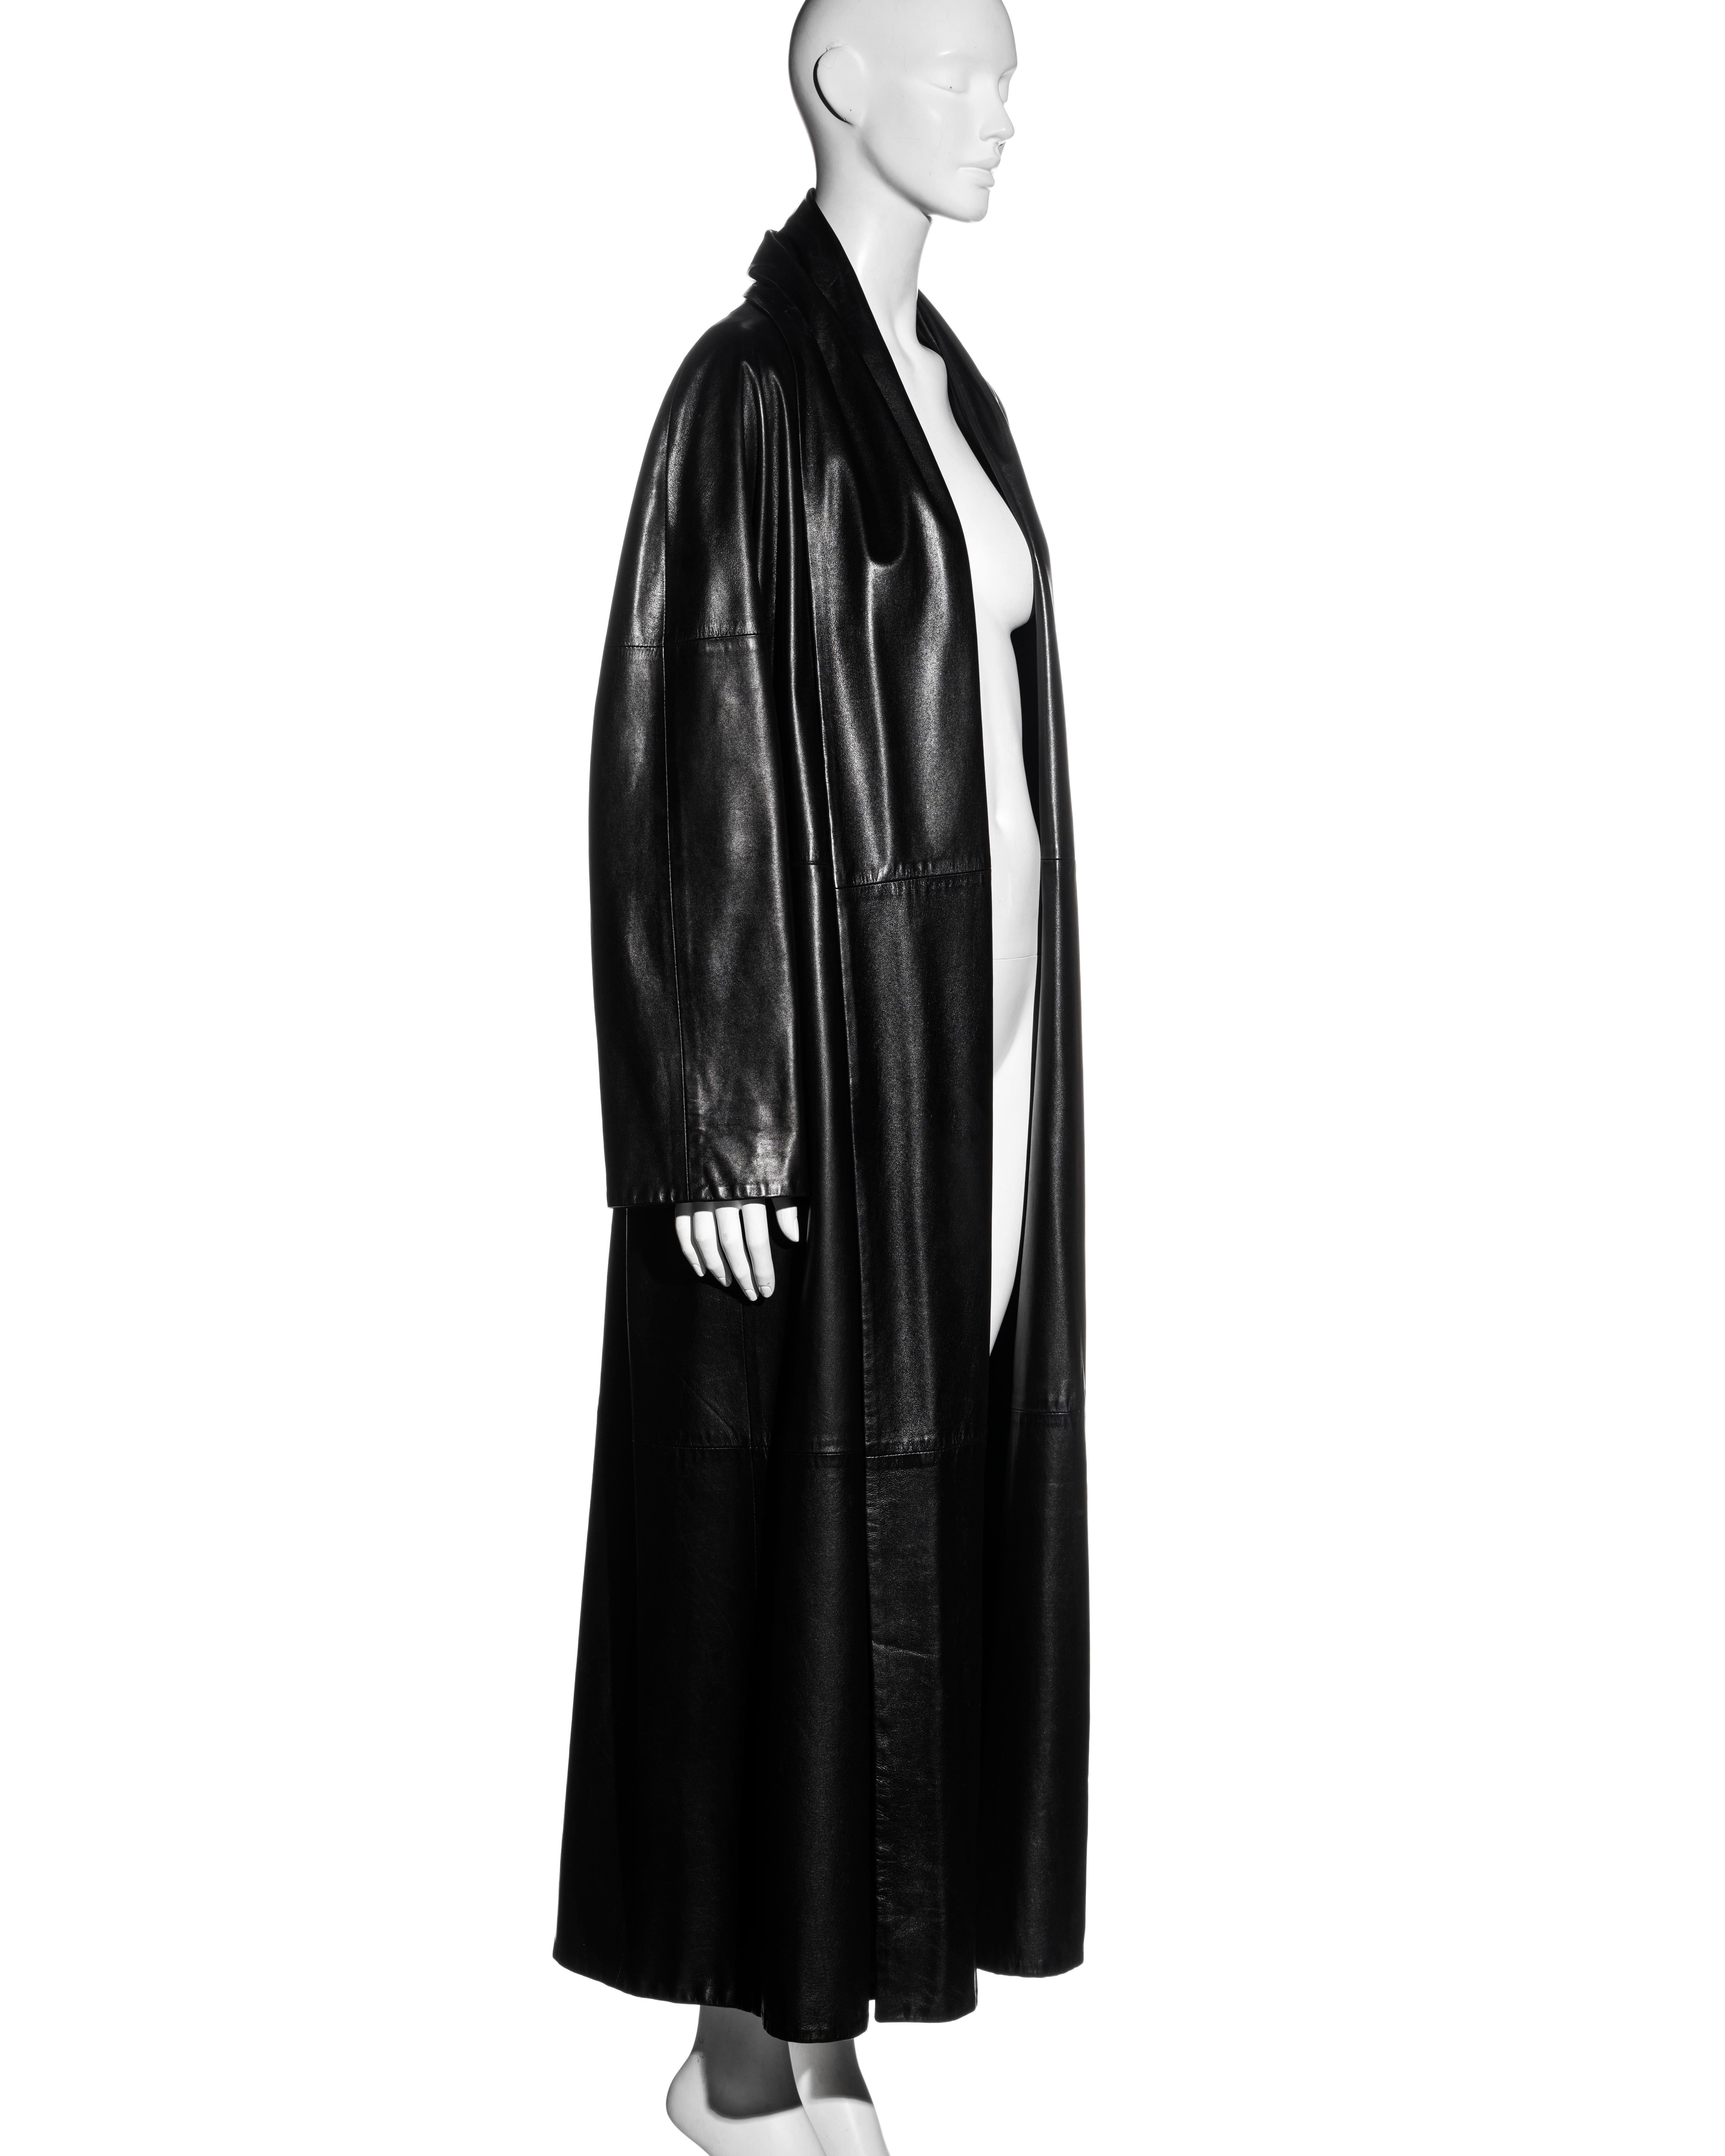 Hermes by Martin Margiela black lambskin leather full-length coat, fw 1999 2